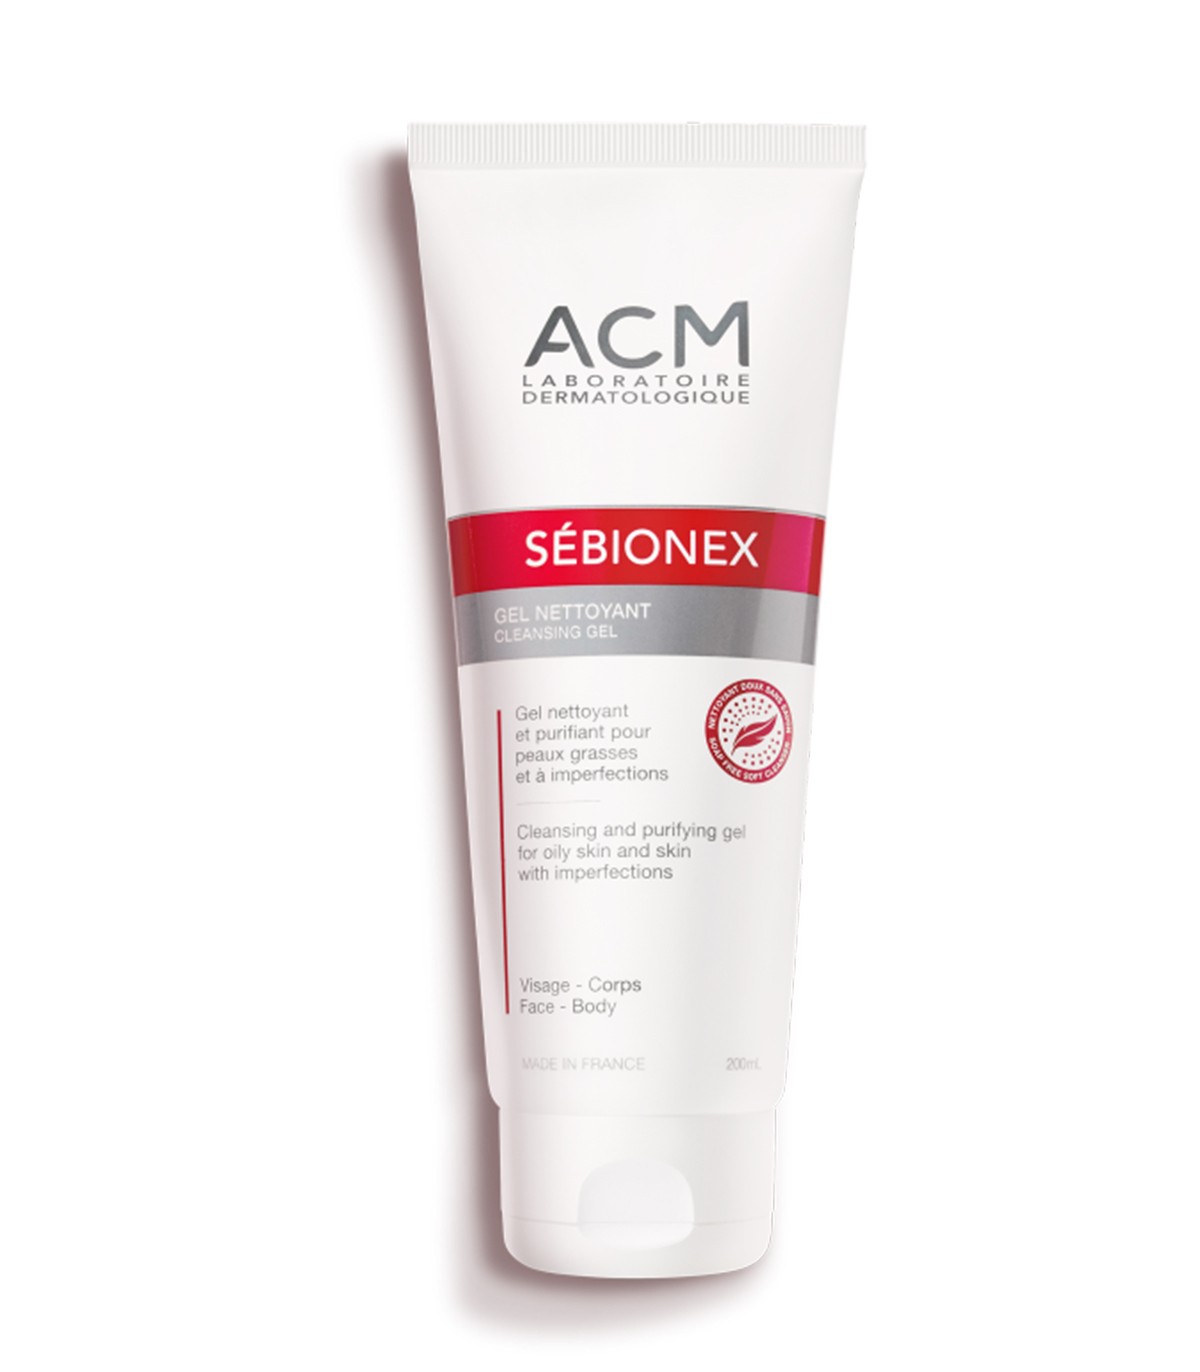 Gel nettoyant visage Sébionex ACM - Peaux mixtes à grasses